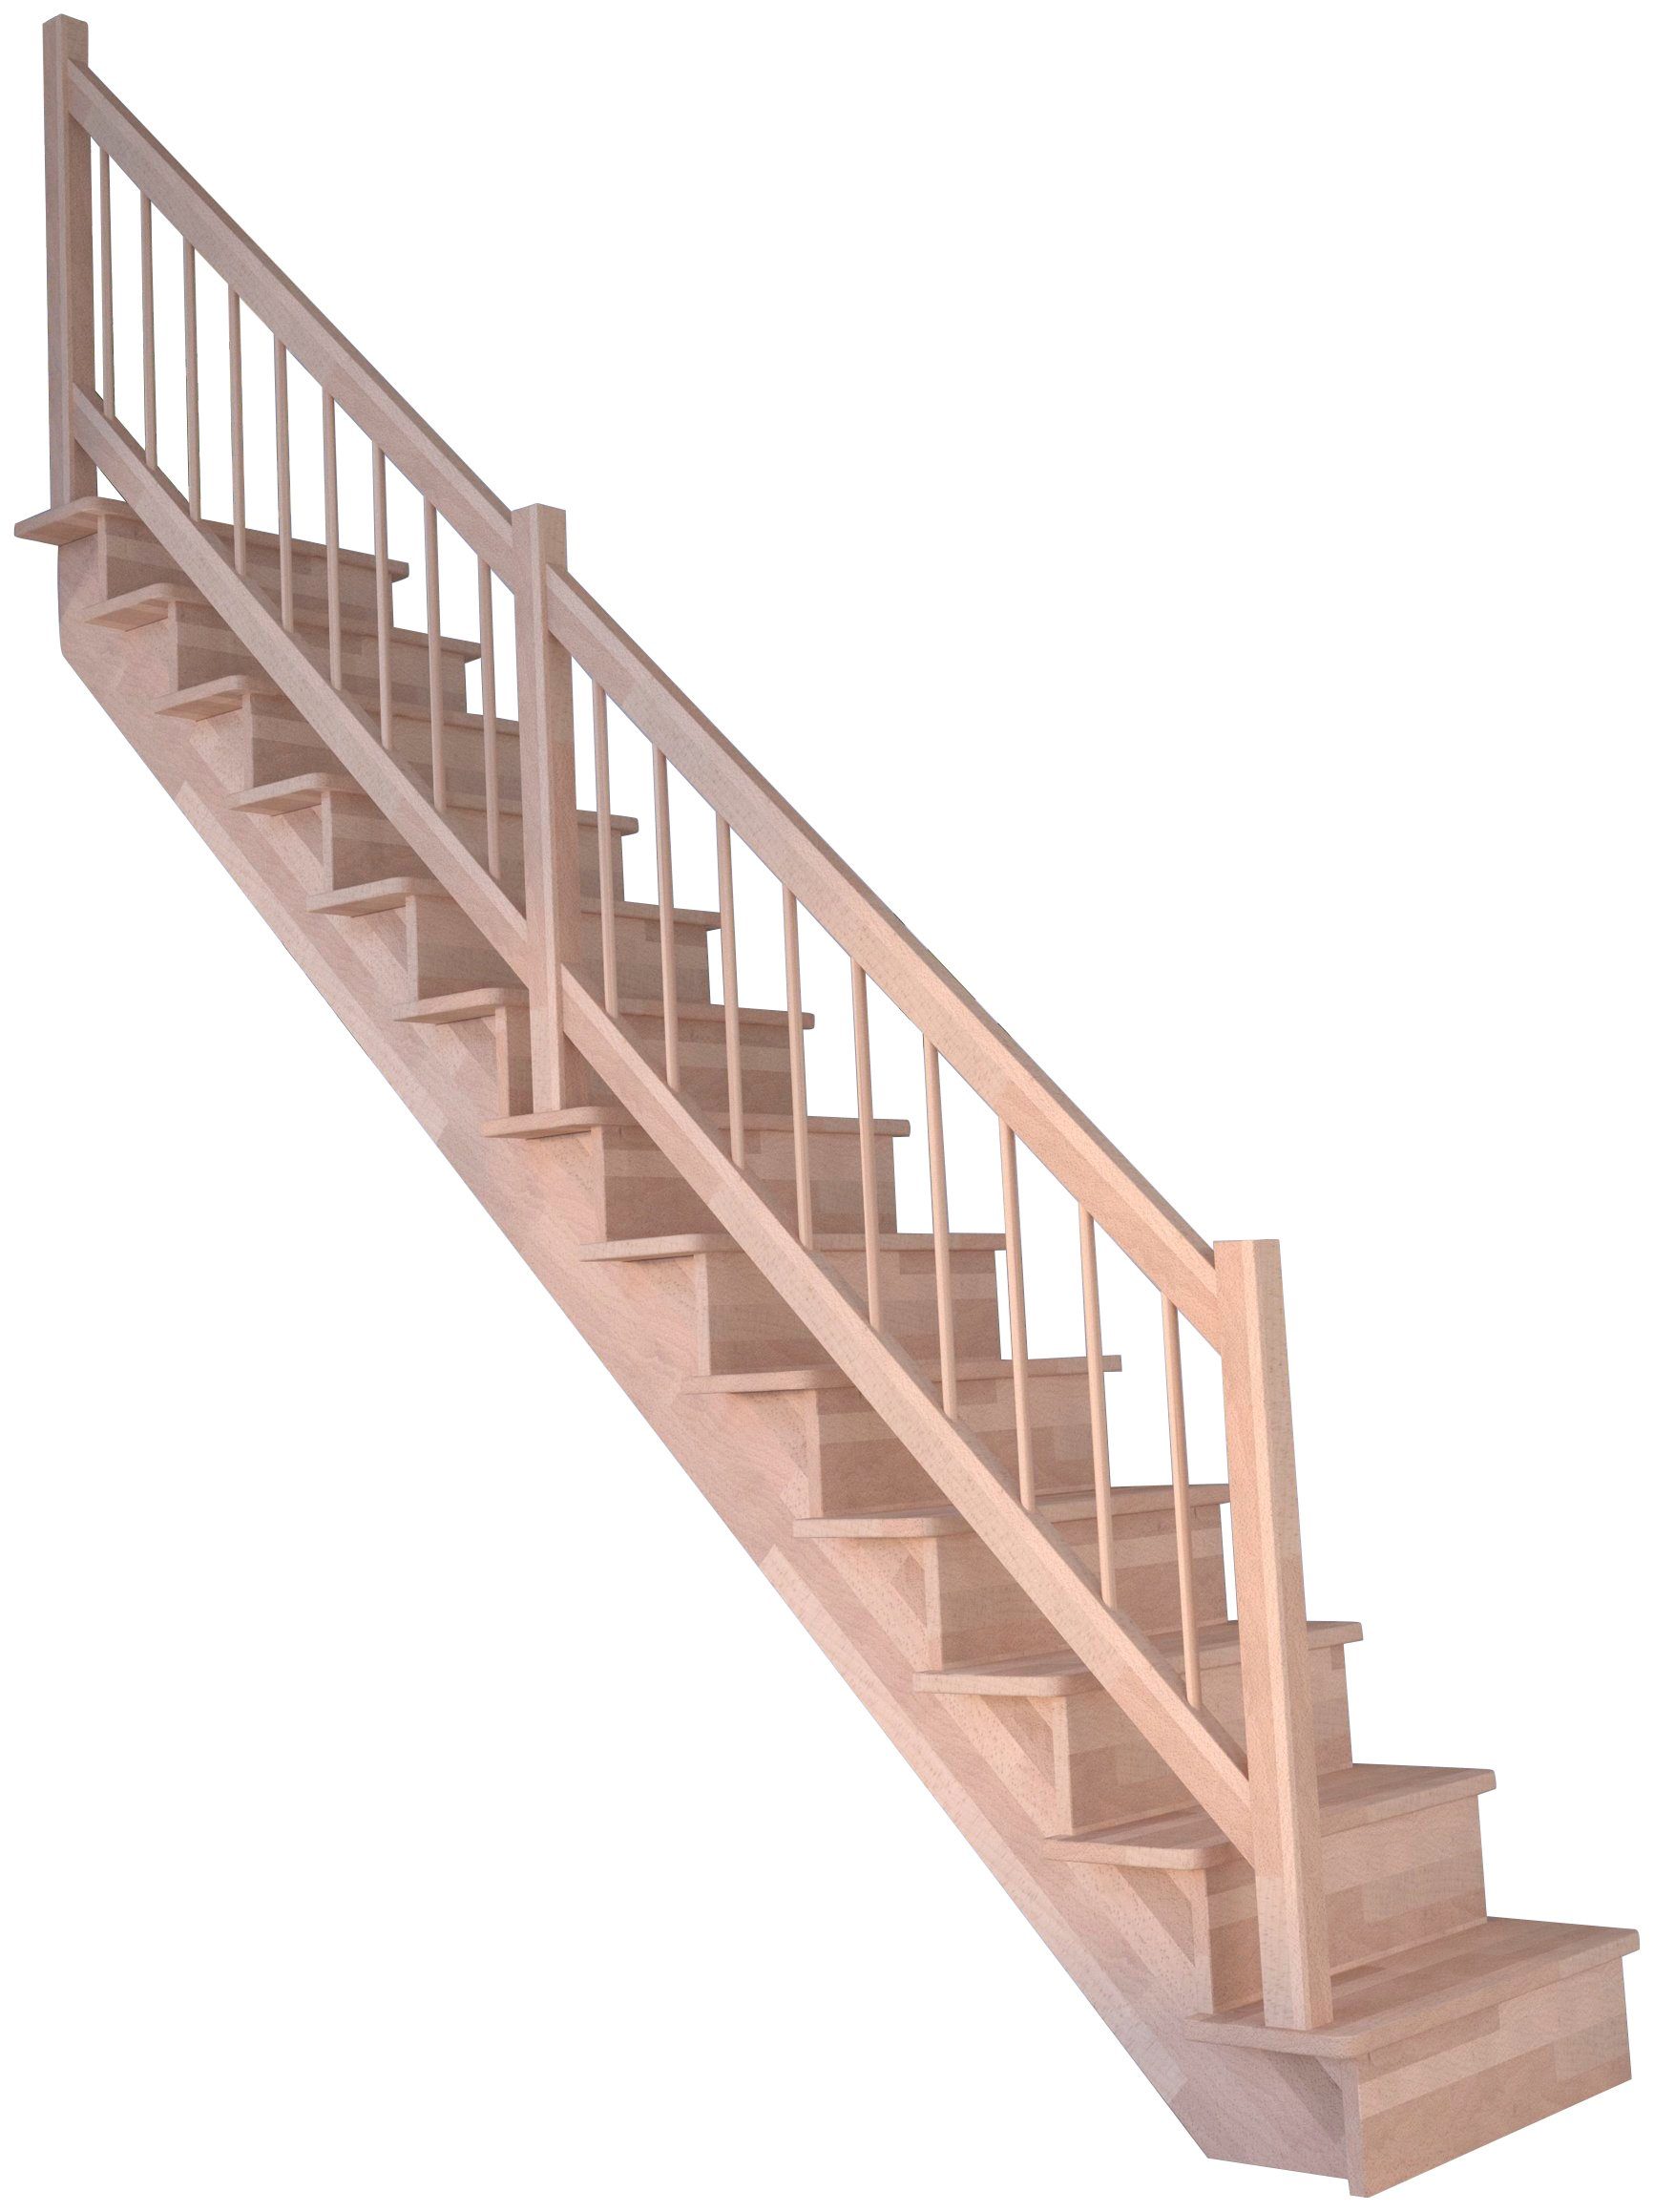 Starwood Systemtreppe Massivholz Lindos, Holz-Holz Design Geländer, für Geschosshöhen bis 300 cm, Stufen geschlossen, Durchgehende Wangenteile